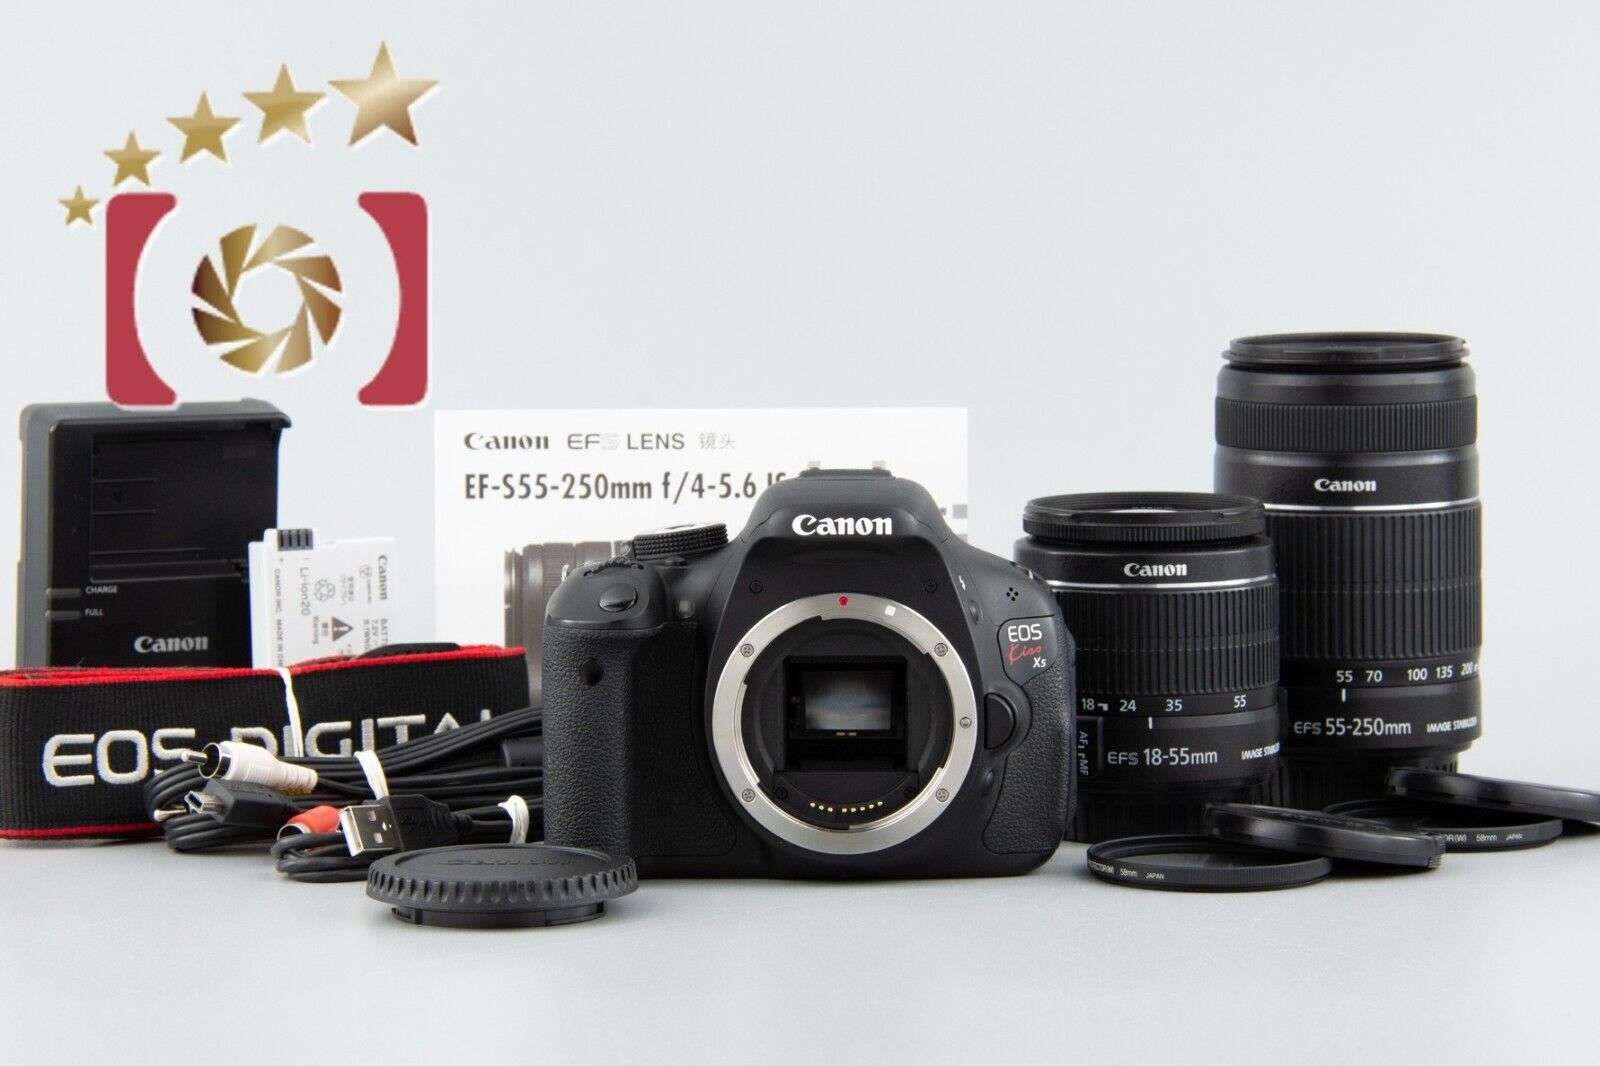 "Count 3,966" Canon EOS Kiss X5 / Rebel T3i / 600D 18.0 MP 18-55 55-250 Lenses